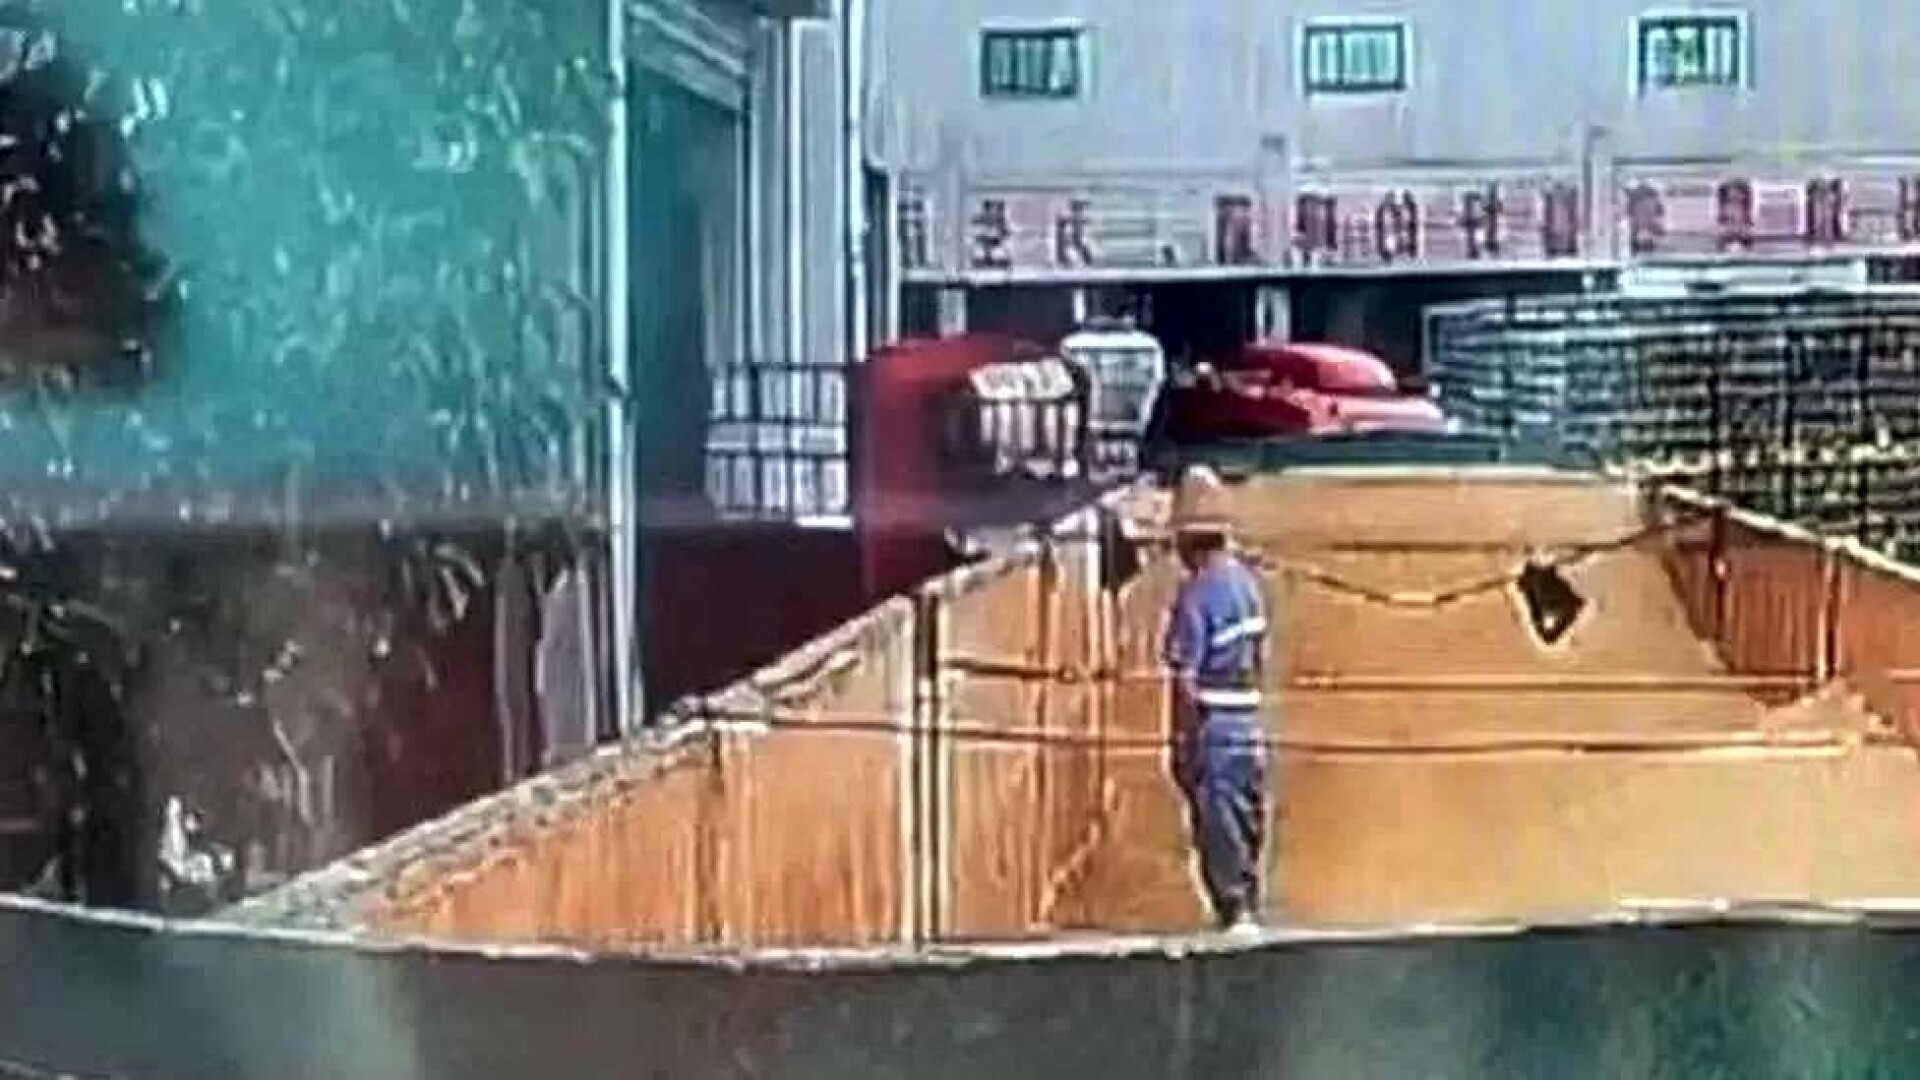 Muncitor filmat în timp ce urinează într-un rezervor la fabrica de bere. Acțiunile Tsingtao s-au prăbușit